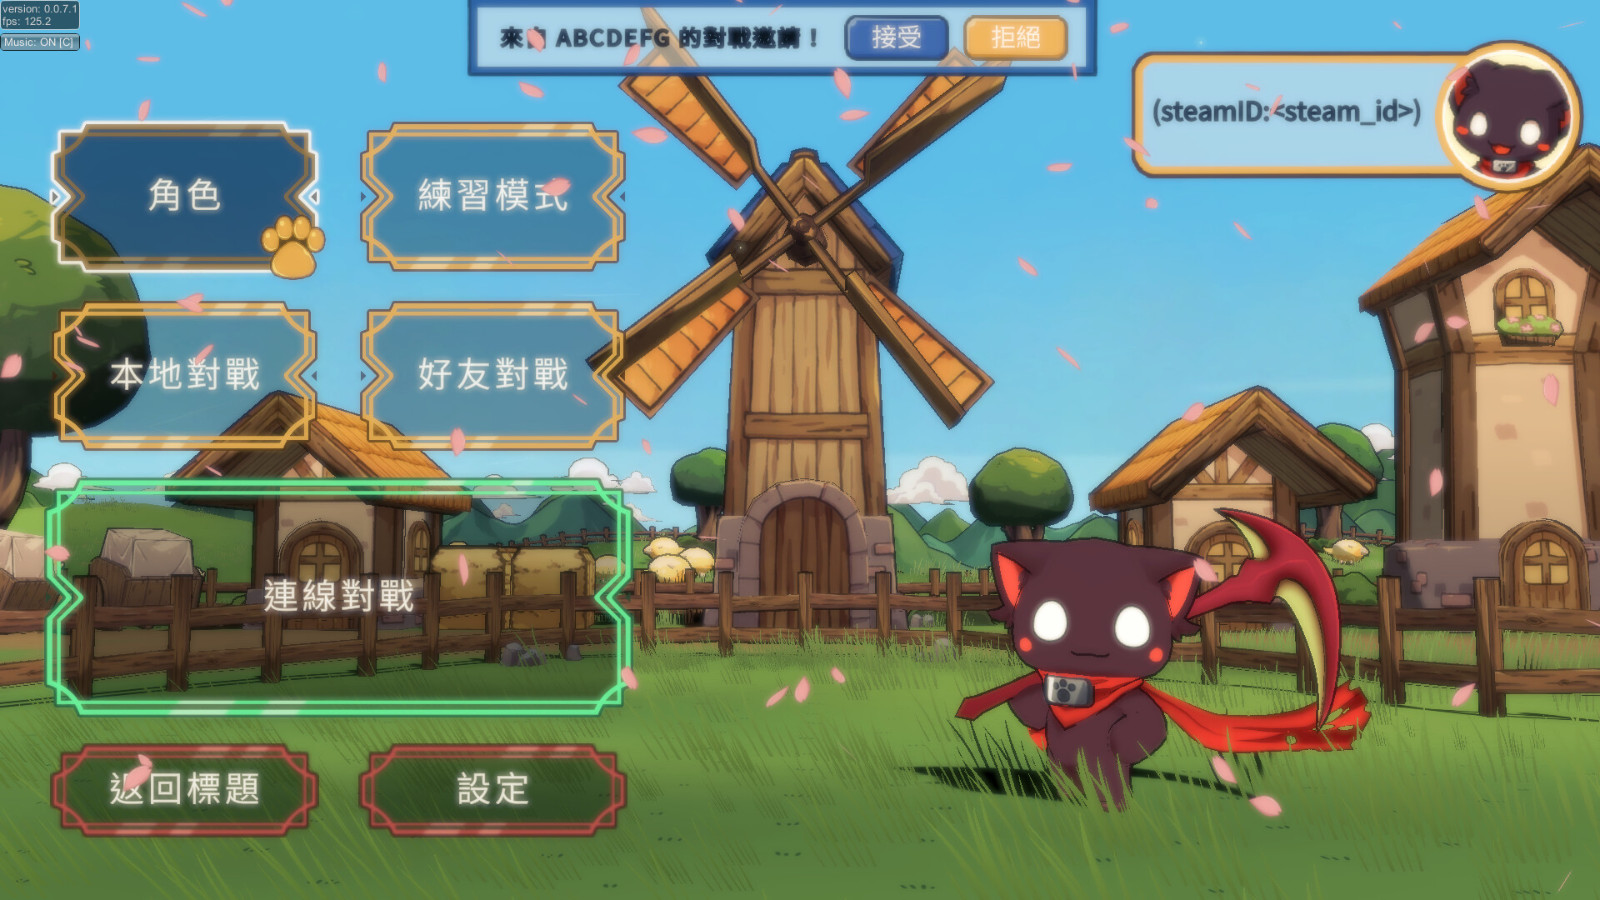 轻度格斗休闲派对游戏《女神试炼》Steam页面上线 支持中文